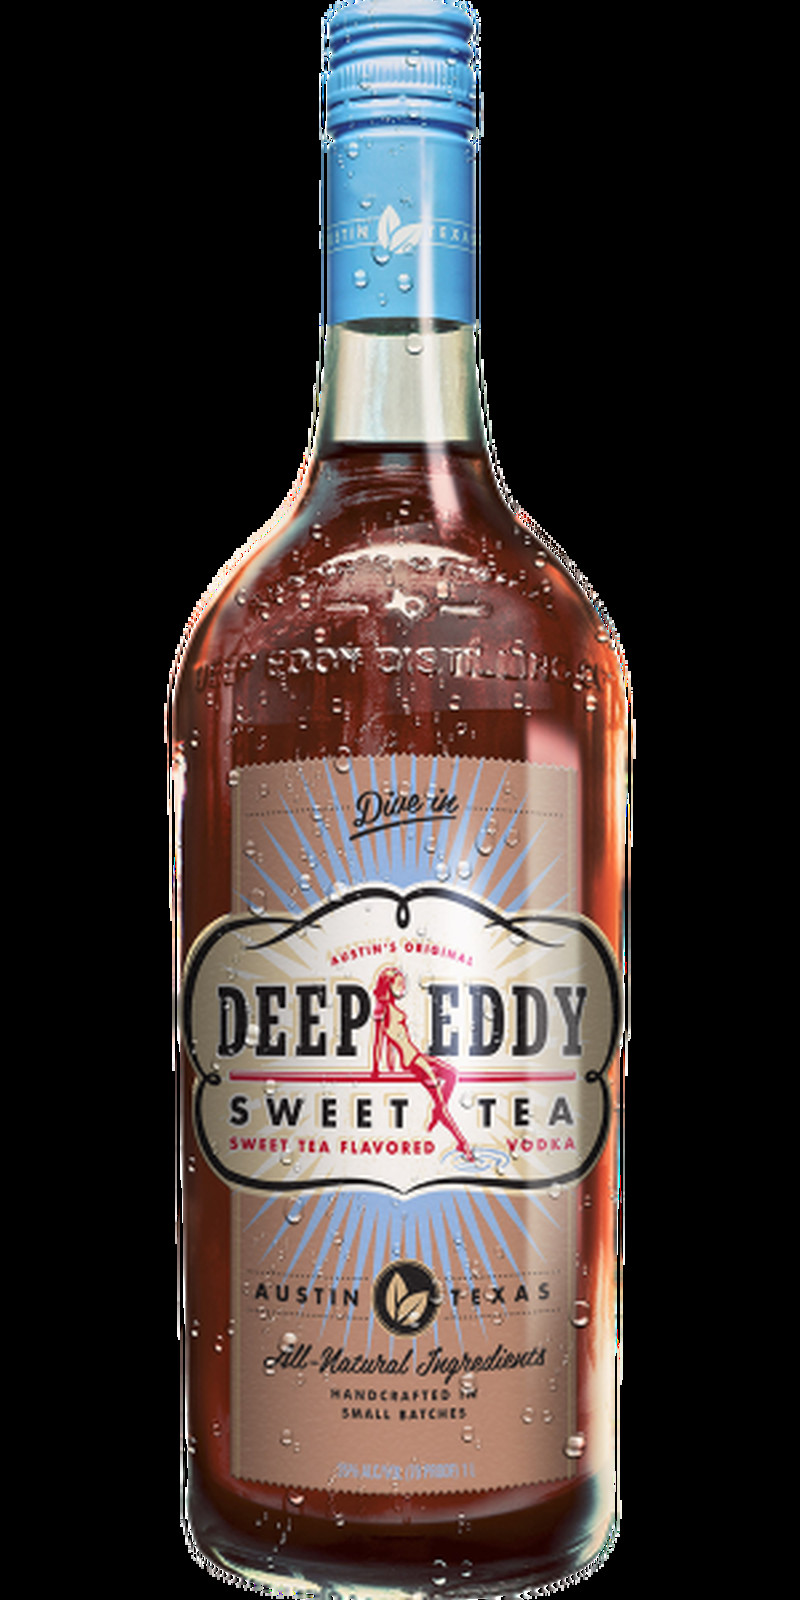 DEEP EDDY SWEET TEA